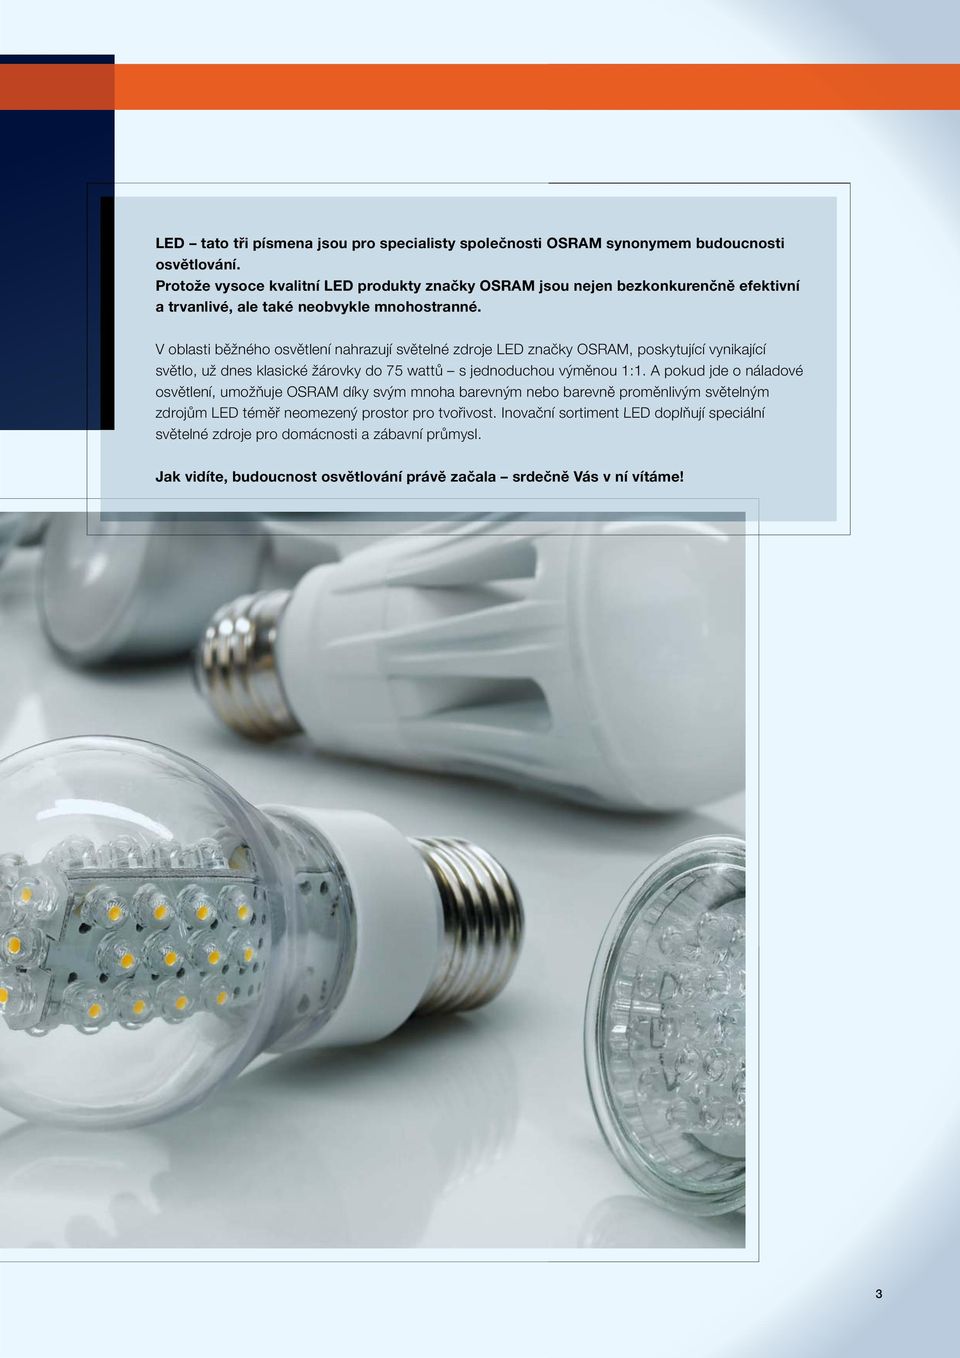 V oblasti běžného osvětlení nahrazují světelné zdroje LED značky OSRAM, poskytující vynikající světlo, už dnes klasické žárovky do 75 wattů s jednoduchou výměnou 1:1.